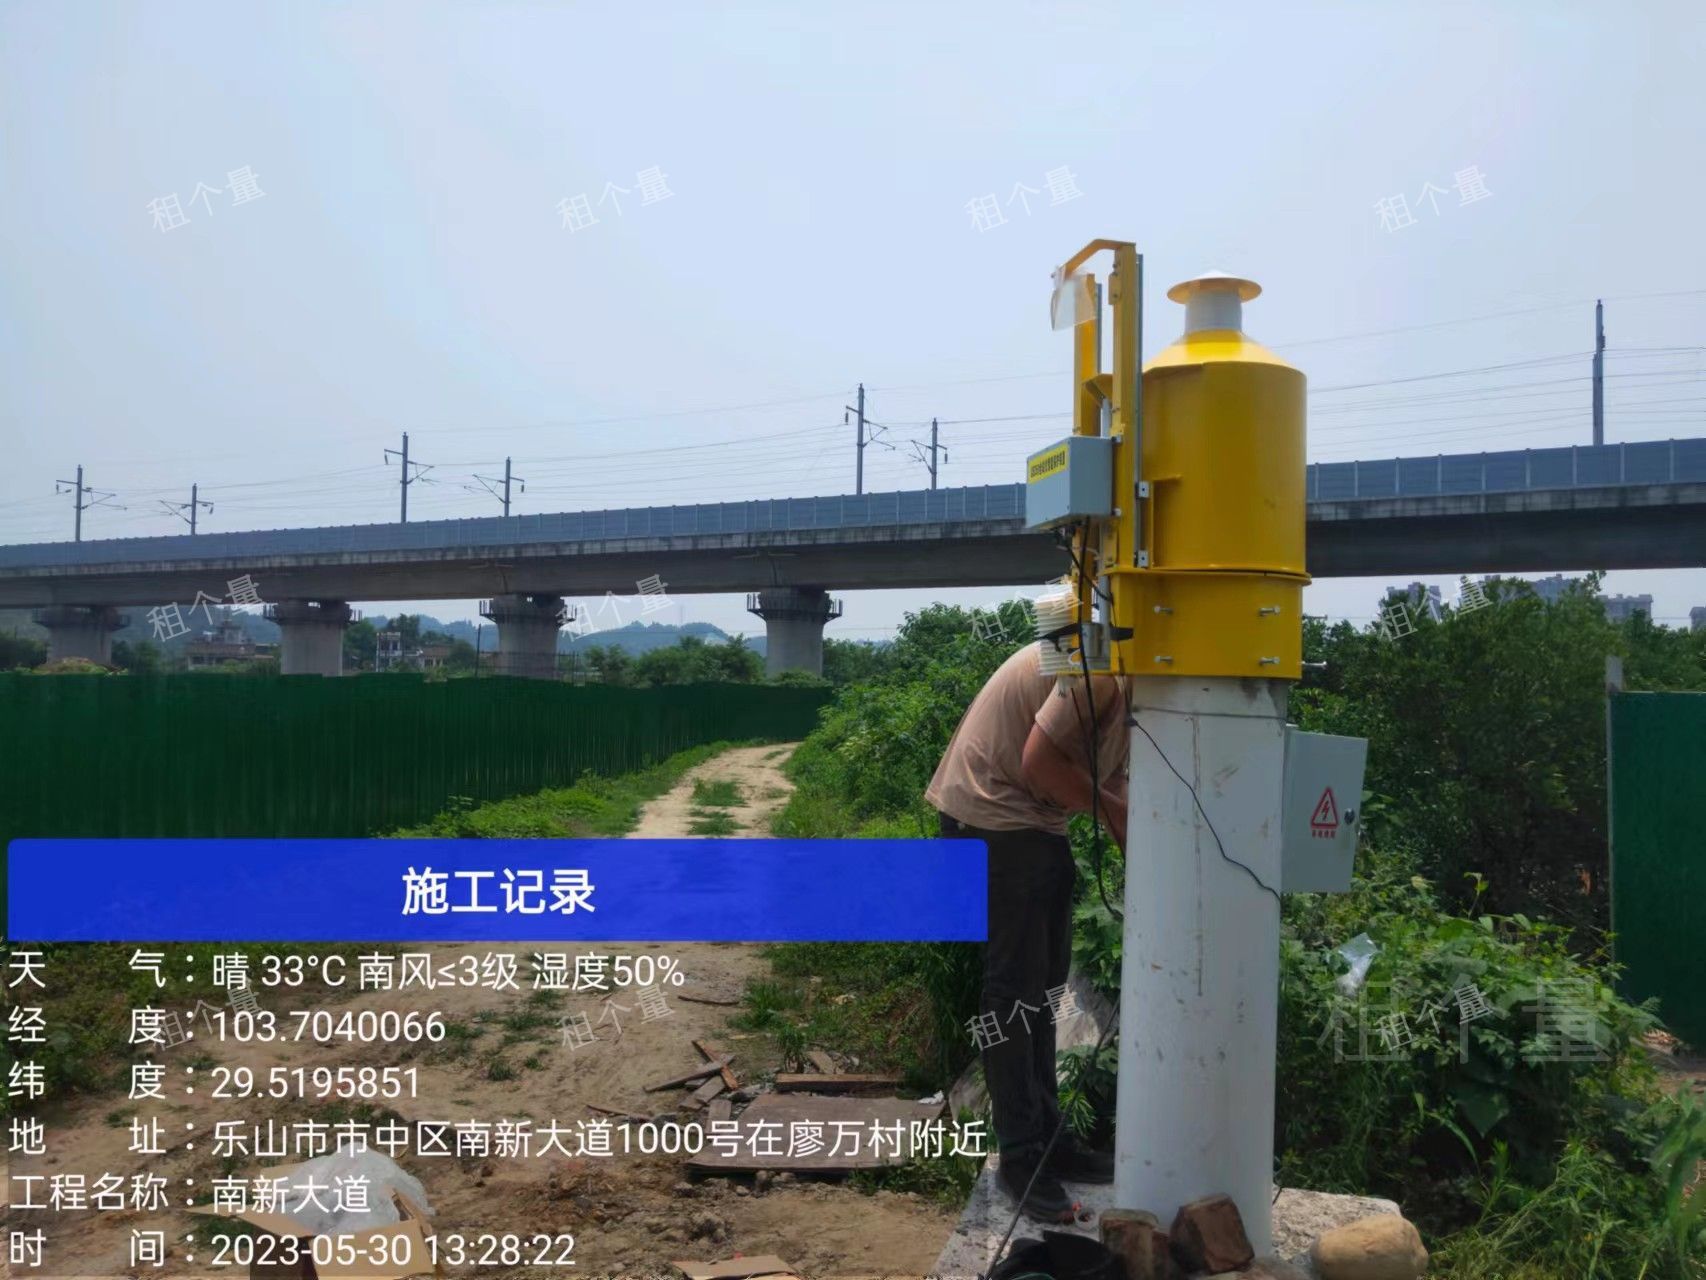 徕卡TM60在监测高铁高架桥中的运用